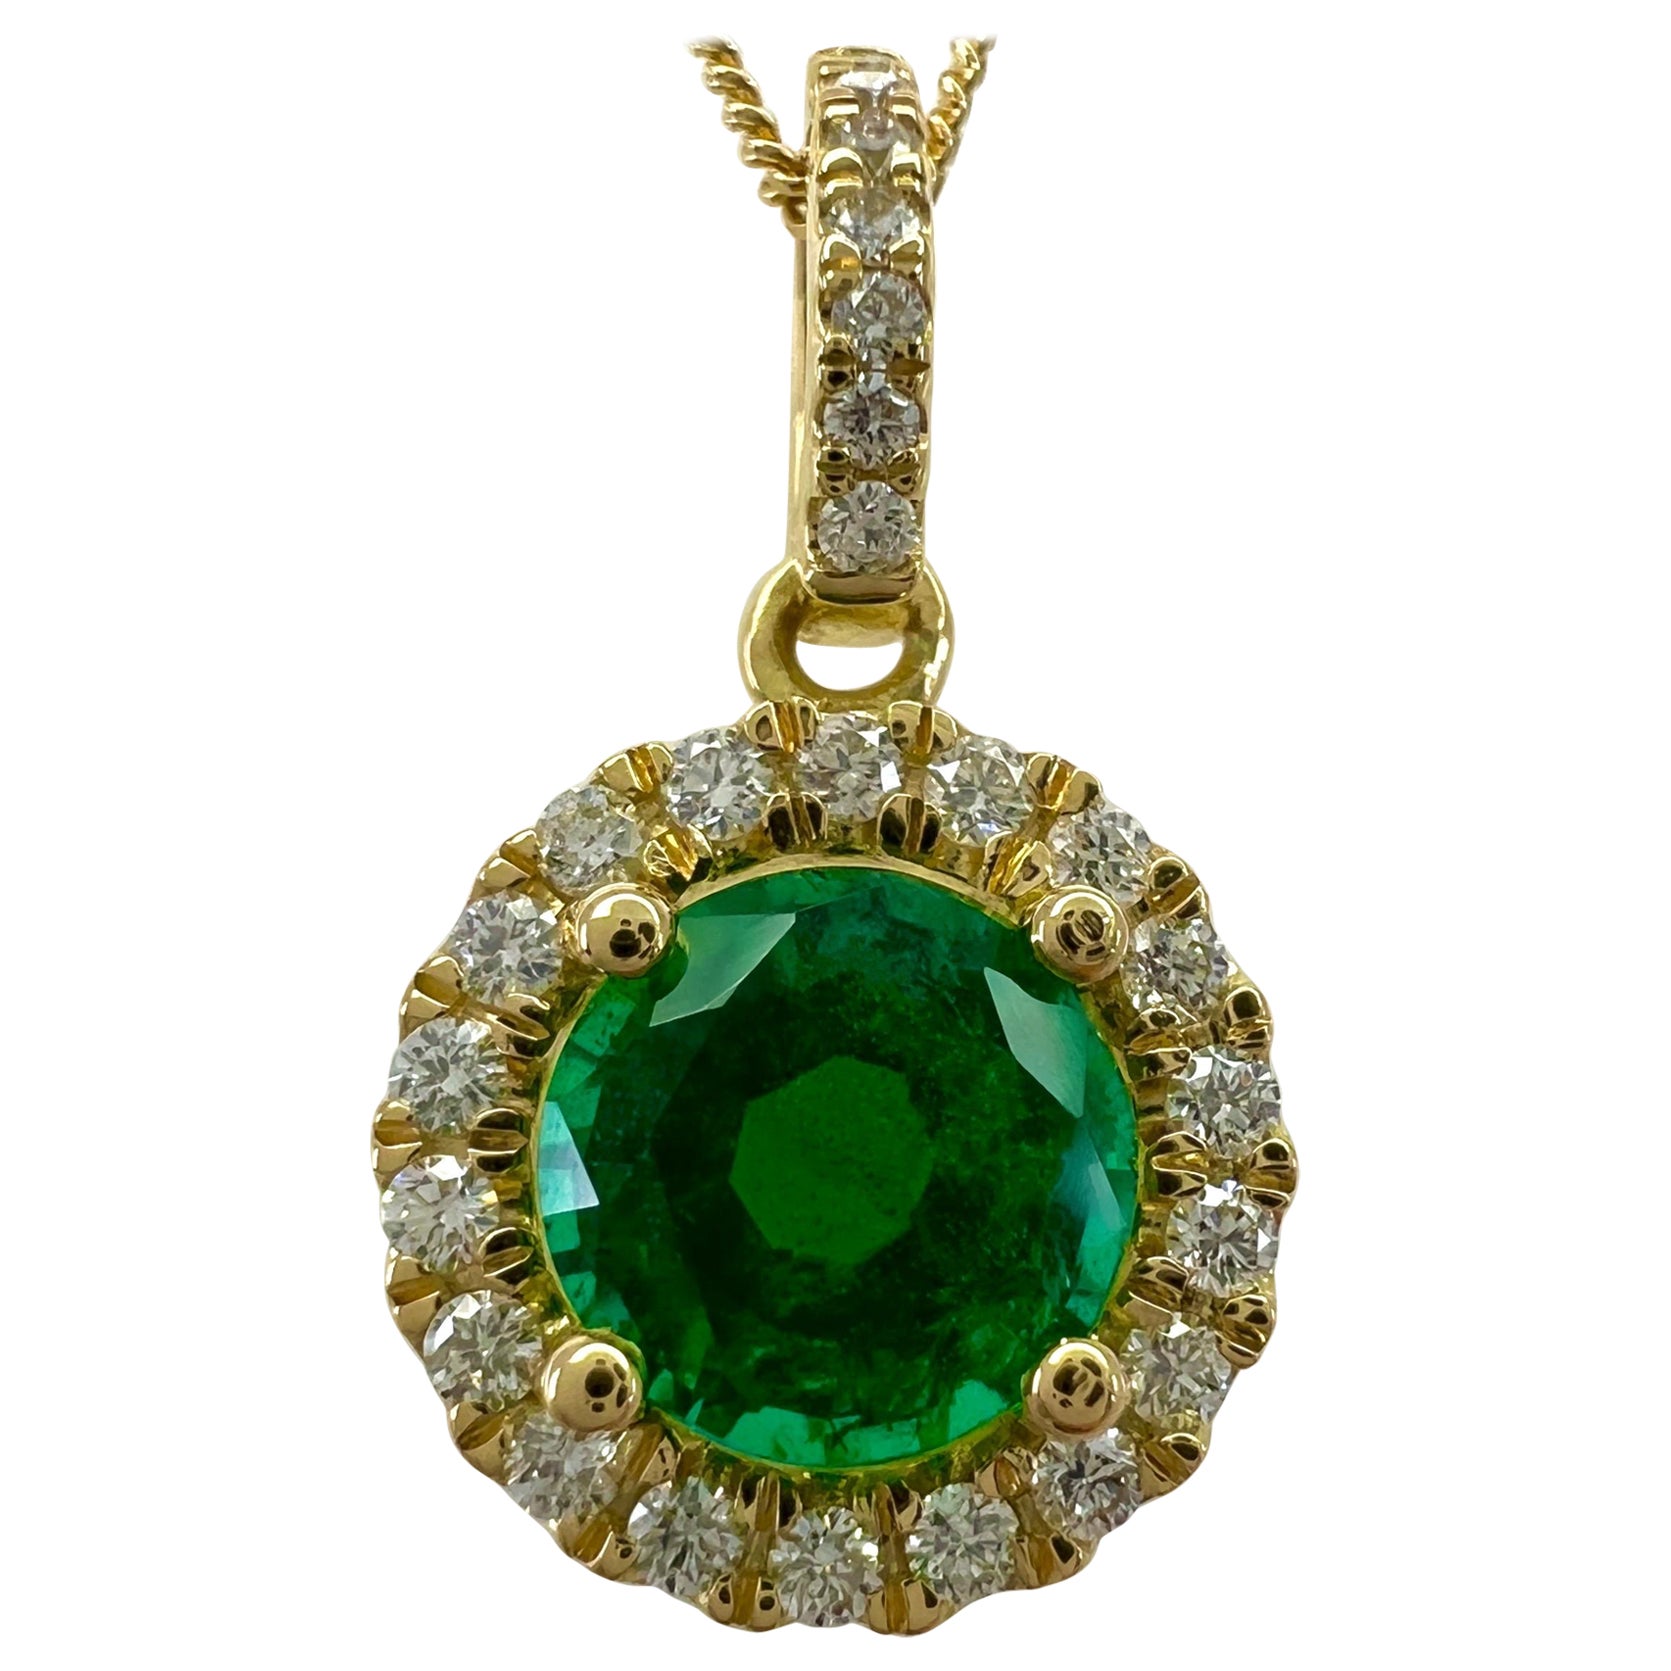 Pendentif halo en or 18 carats avec diamants et émeraude verte de taille ronde de 1,06 carat certifiée IGI